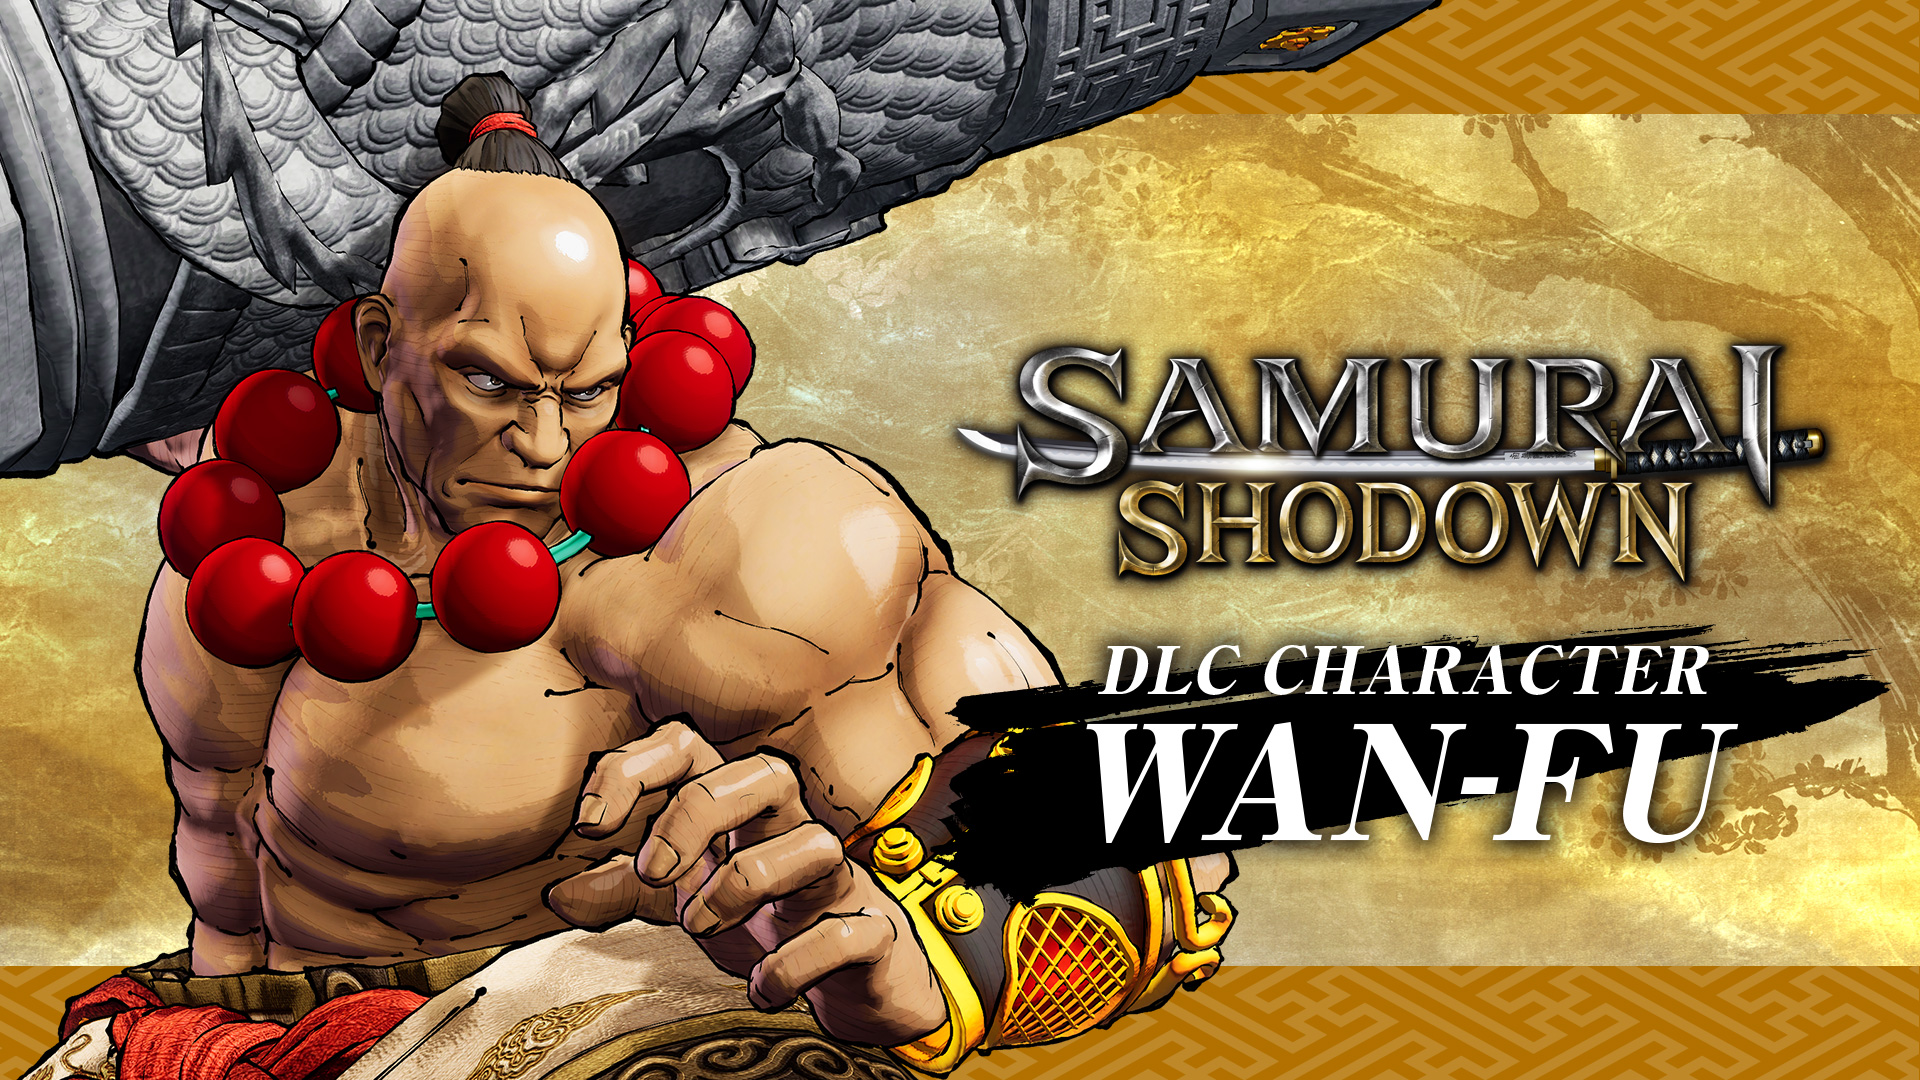 SAMURAI SHODOWN: CHARACTER "WAN-FU"